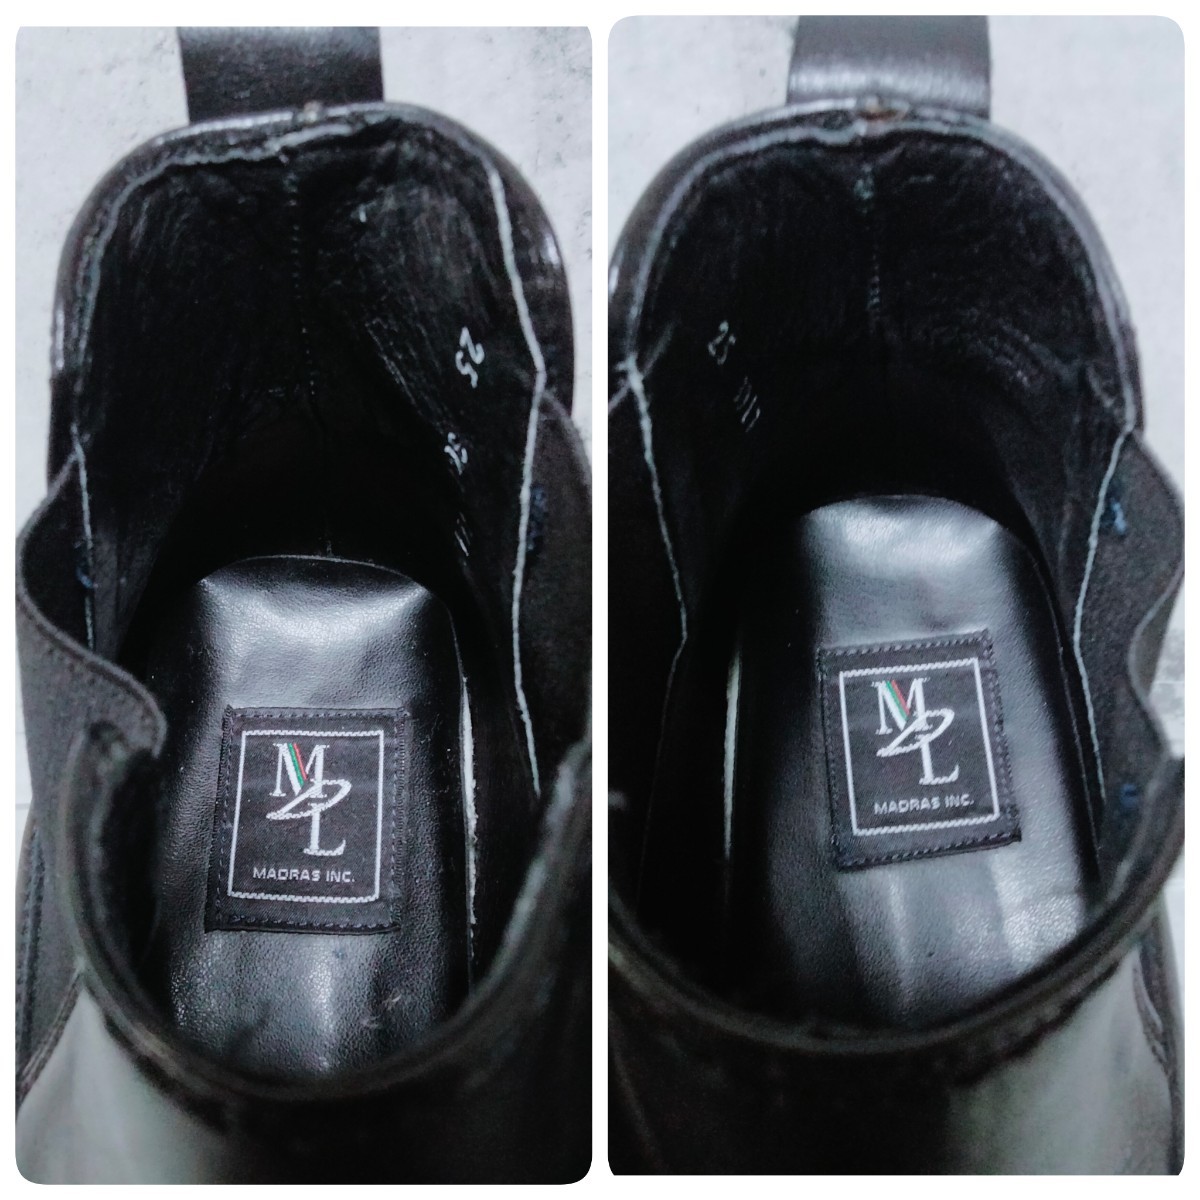 MADRAS MDL マドラス エムディーエル ■ サイドゴアブーツ 25.0cm ■ ブラック 黒 レザー 本革 メンズ ビジネス カジュアル 紳士靴 _画像8